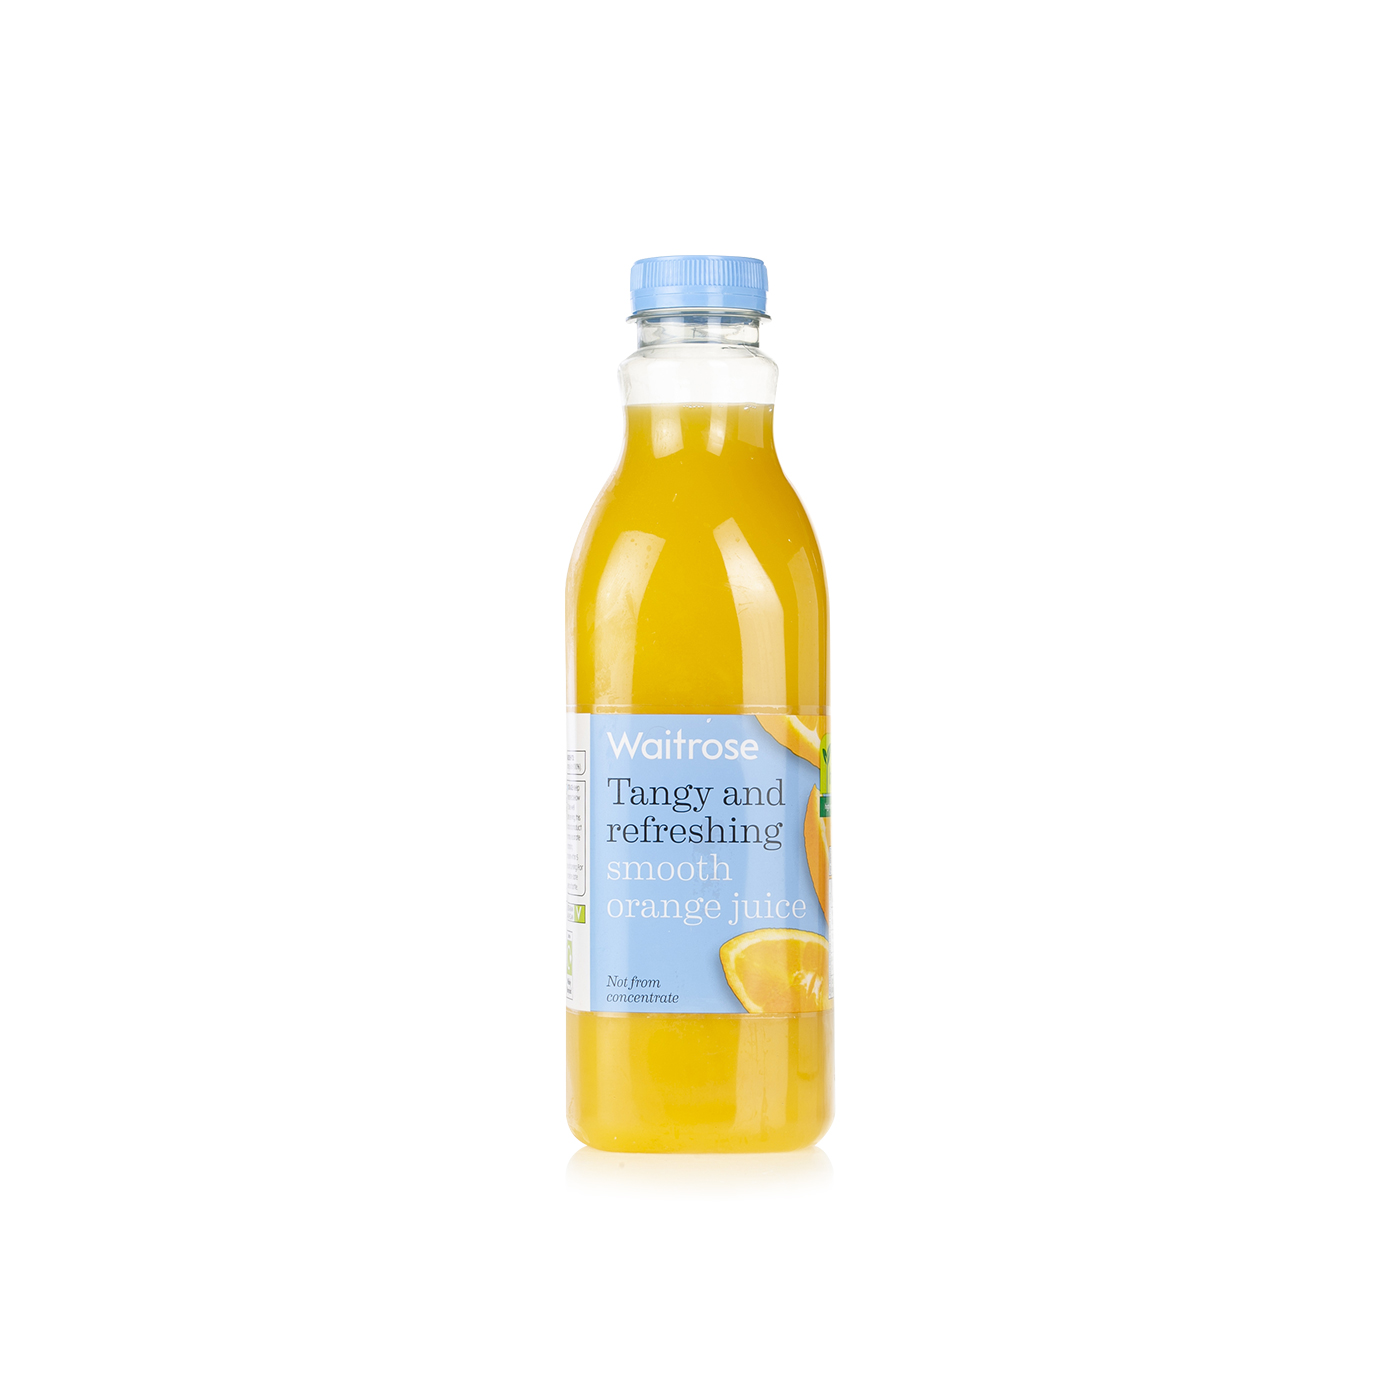 Waitrose smooth orange juice 1ltr - Waitrose UAE & Partners